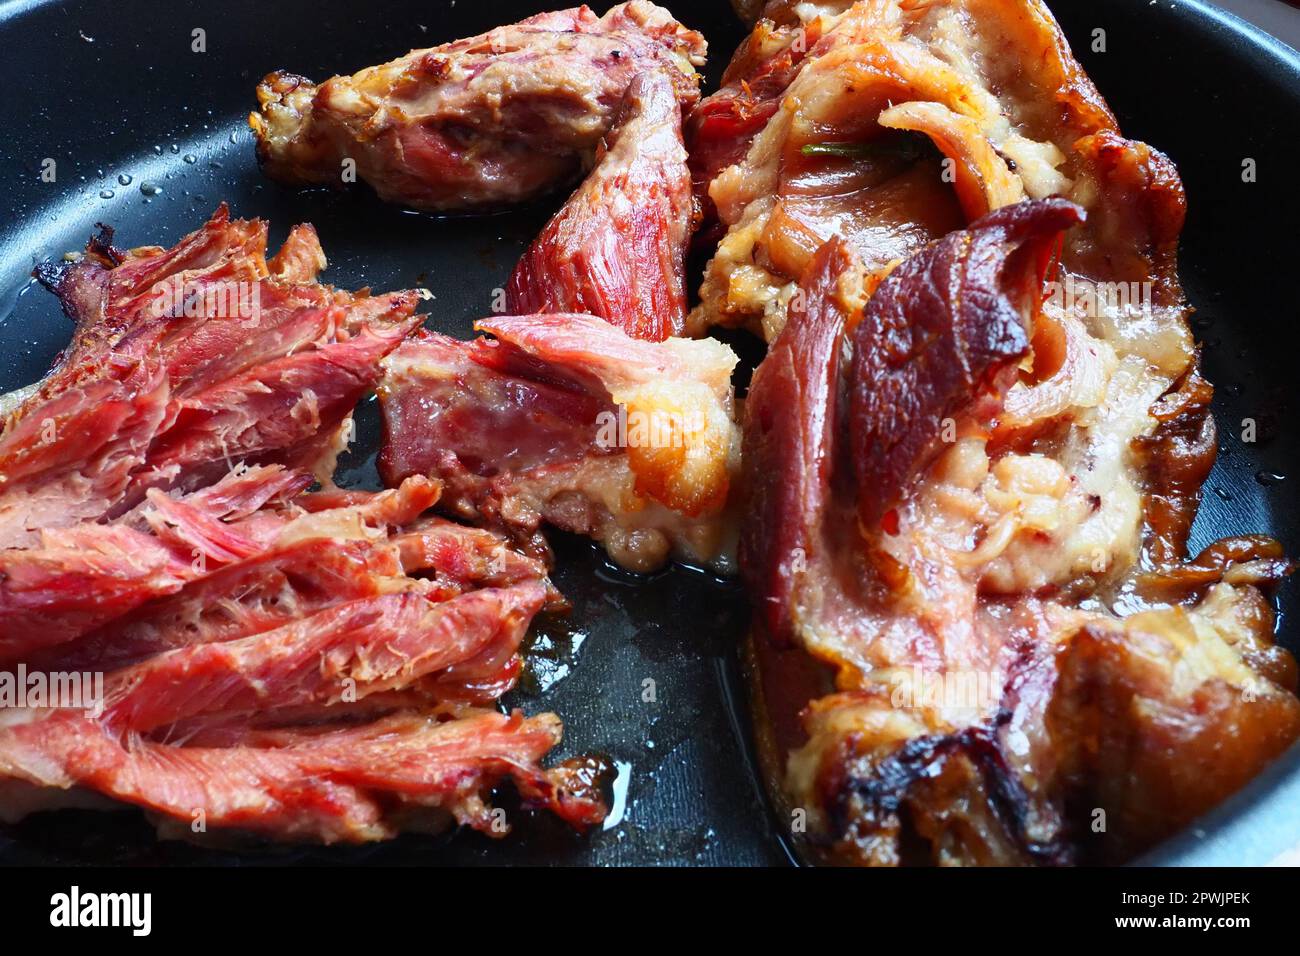 Épaule ou genou de porc fumé rôti. Délicieuse viande sur une plaque de cuisson noire avec des gouttes d'huile végétale, sortie du four. Spécialité de porc pour din Banque D'Images